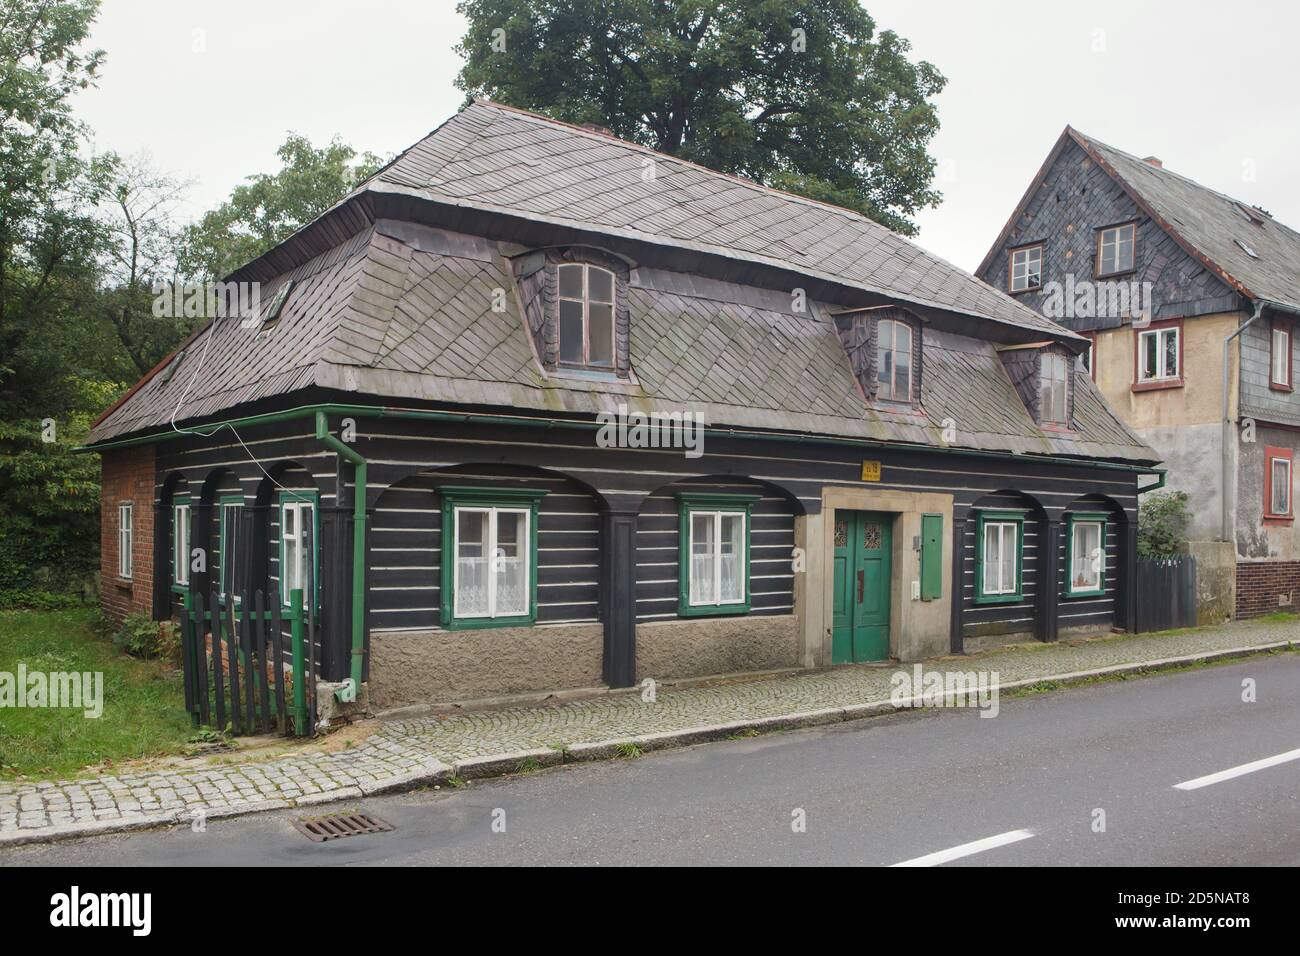 Maison traditionnelle en bois (roubenka) typique de l'architecture populaire dans les montagnes de Lusatien à Jiřetín pod Jedlovou en Bohême du Nord, République tchèque. Banque D'Images